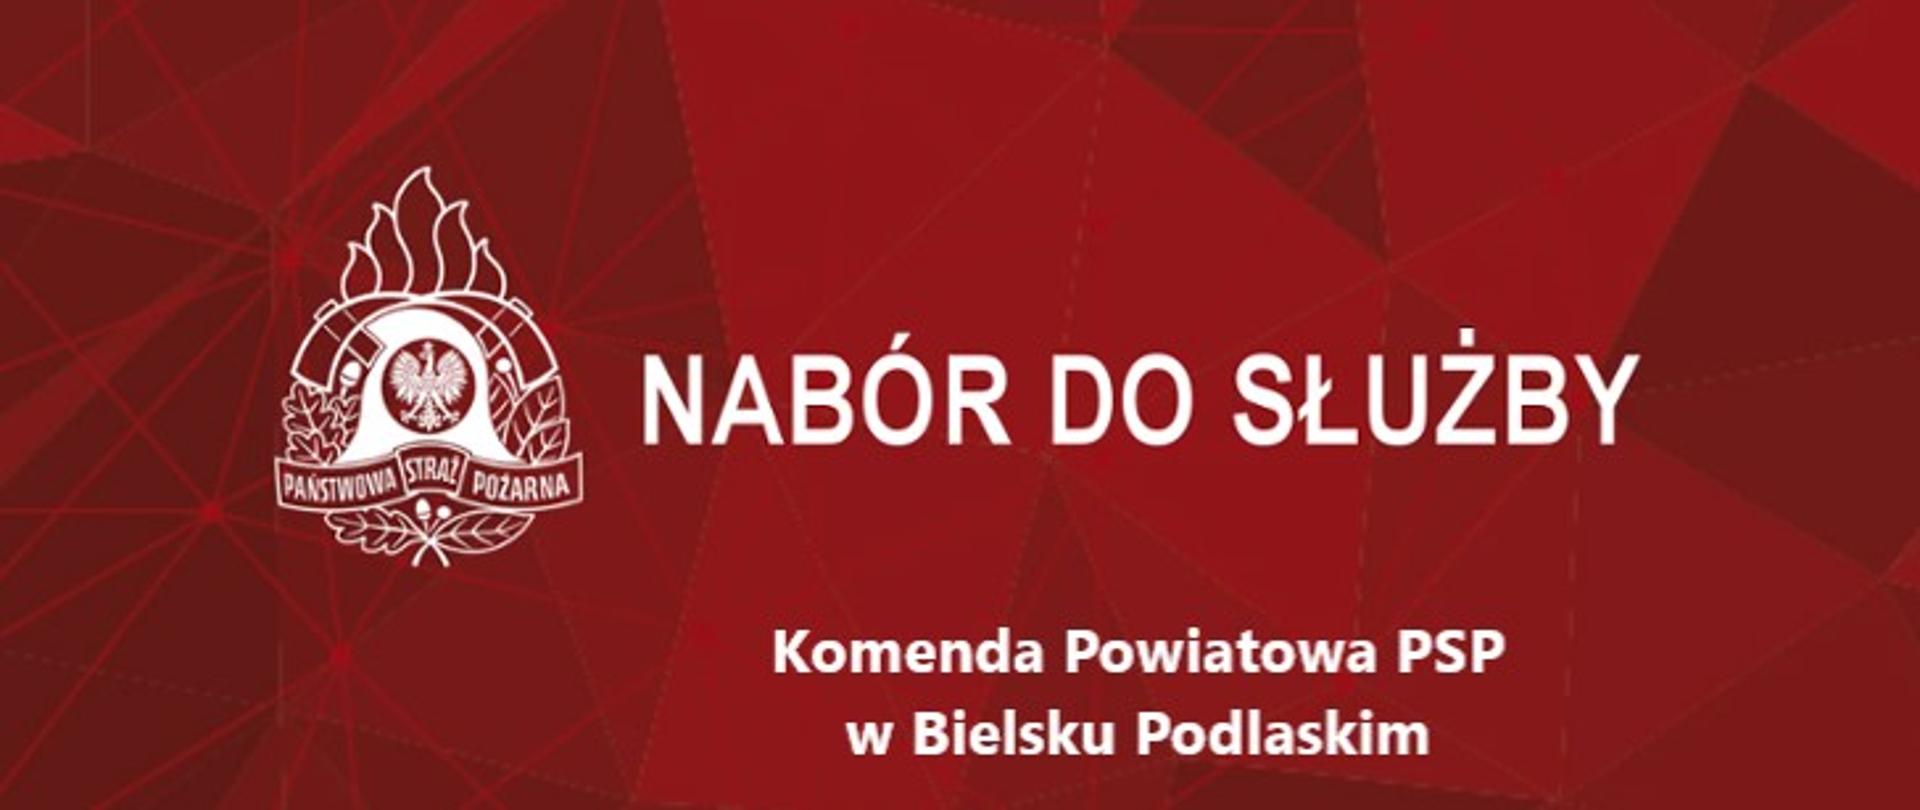 Baner z logo PSP i Napisem: Nabór do służby w KP PSP w Bielsku Podlaskim 